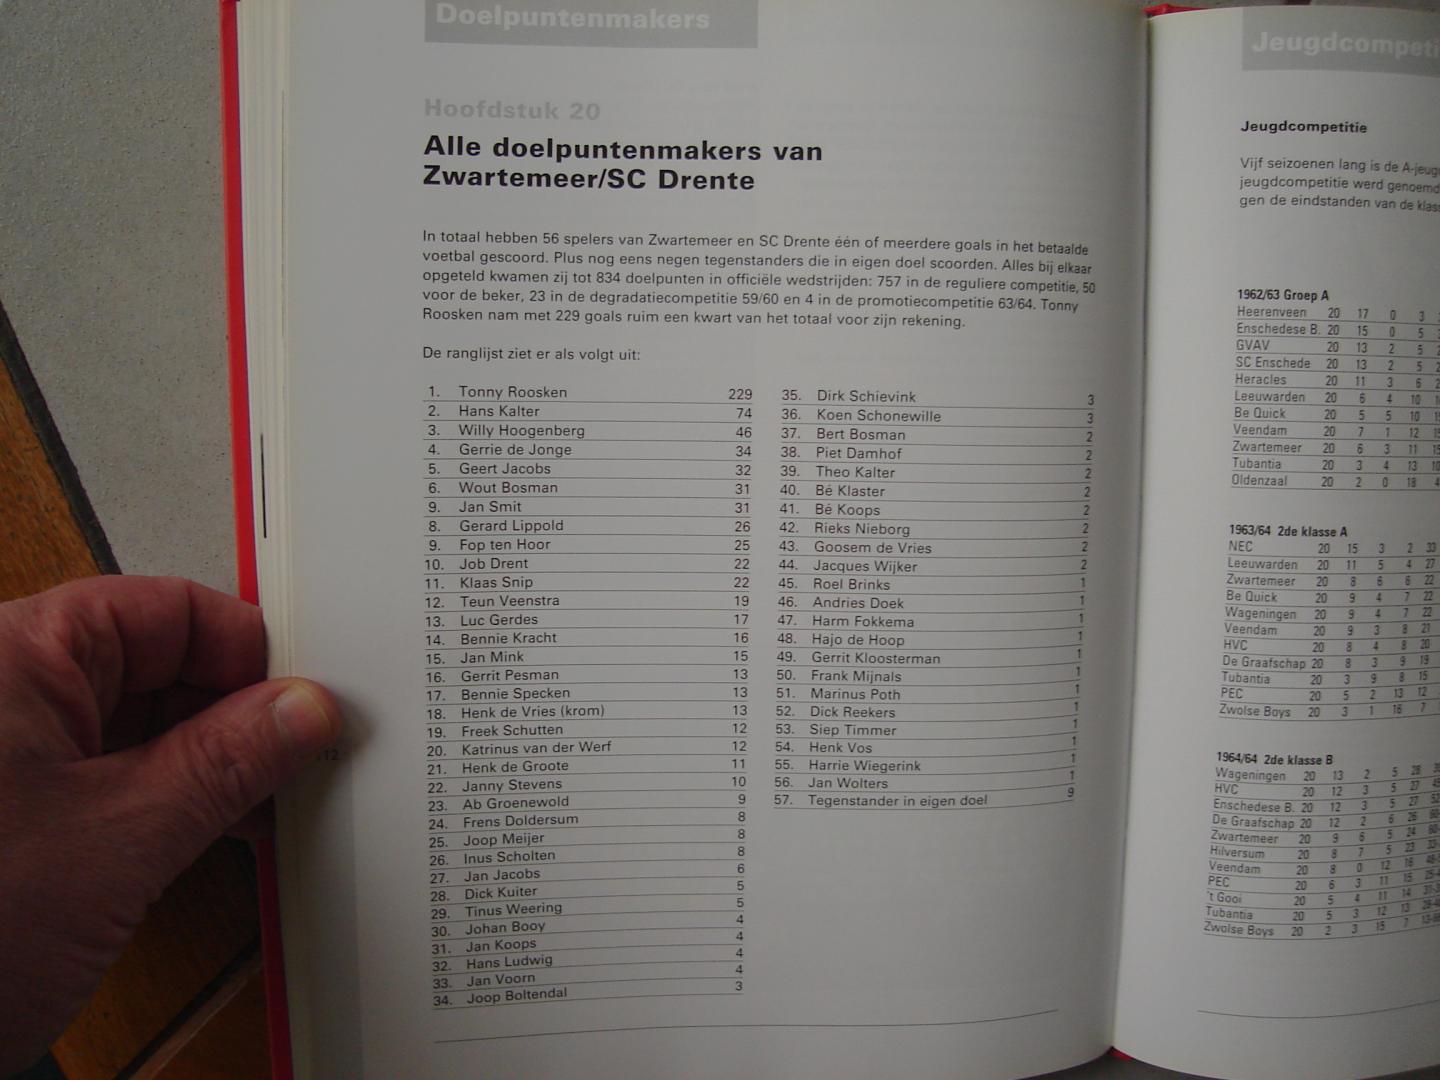 Dirk van der Kaap. - Drenthe"s Voetbaltrots. Zestien jaar betaald voetbal in Zwartemeer / S.C. Drente  1955 - 1971.